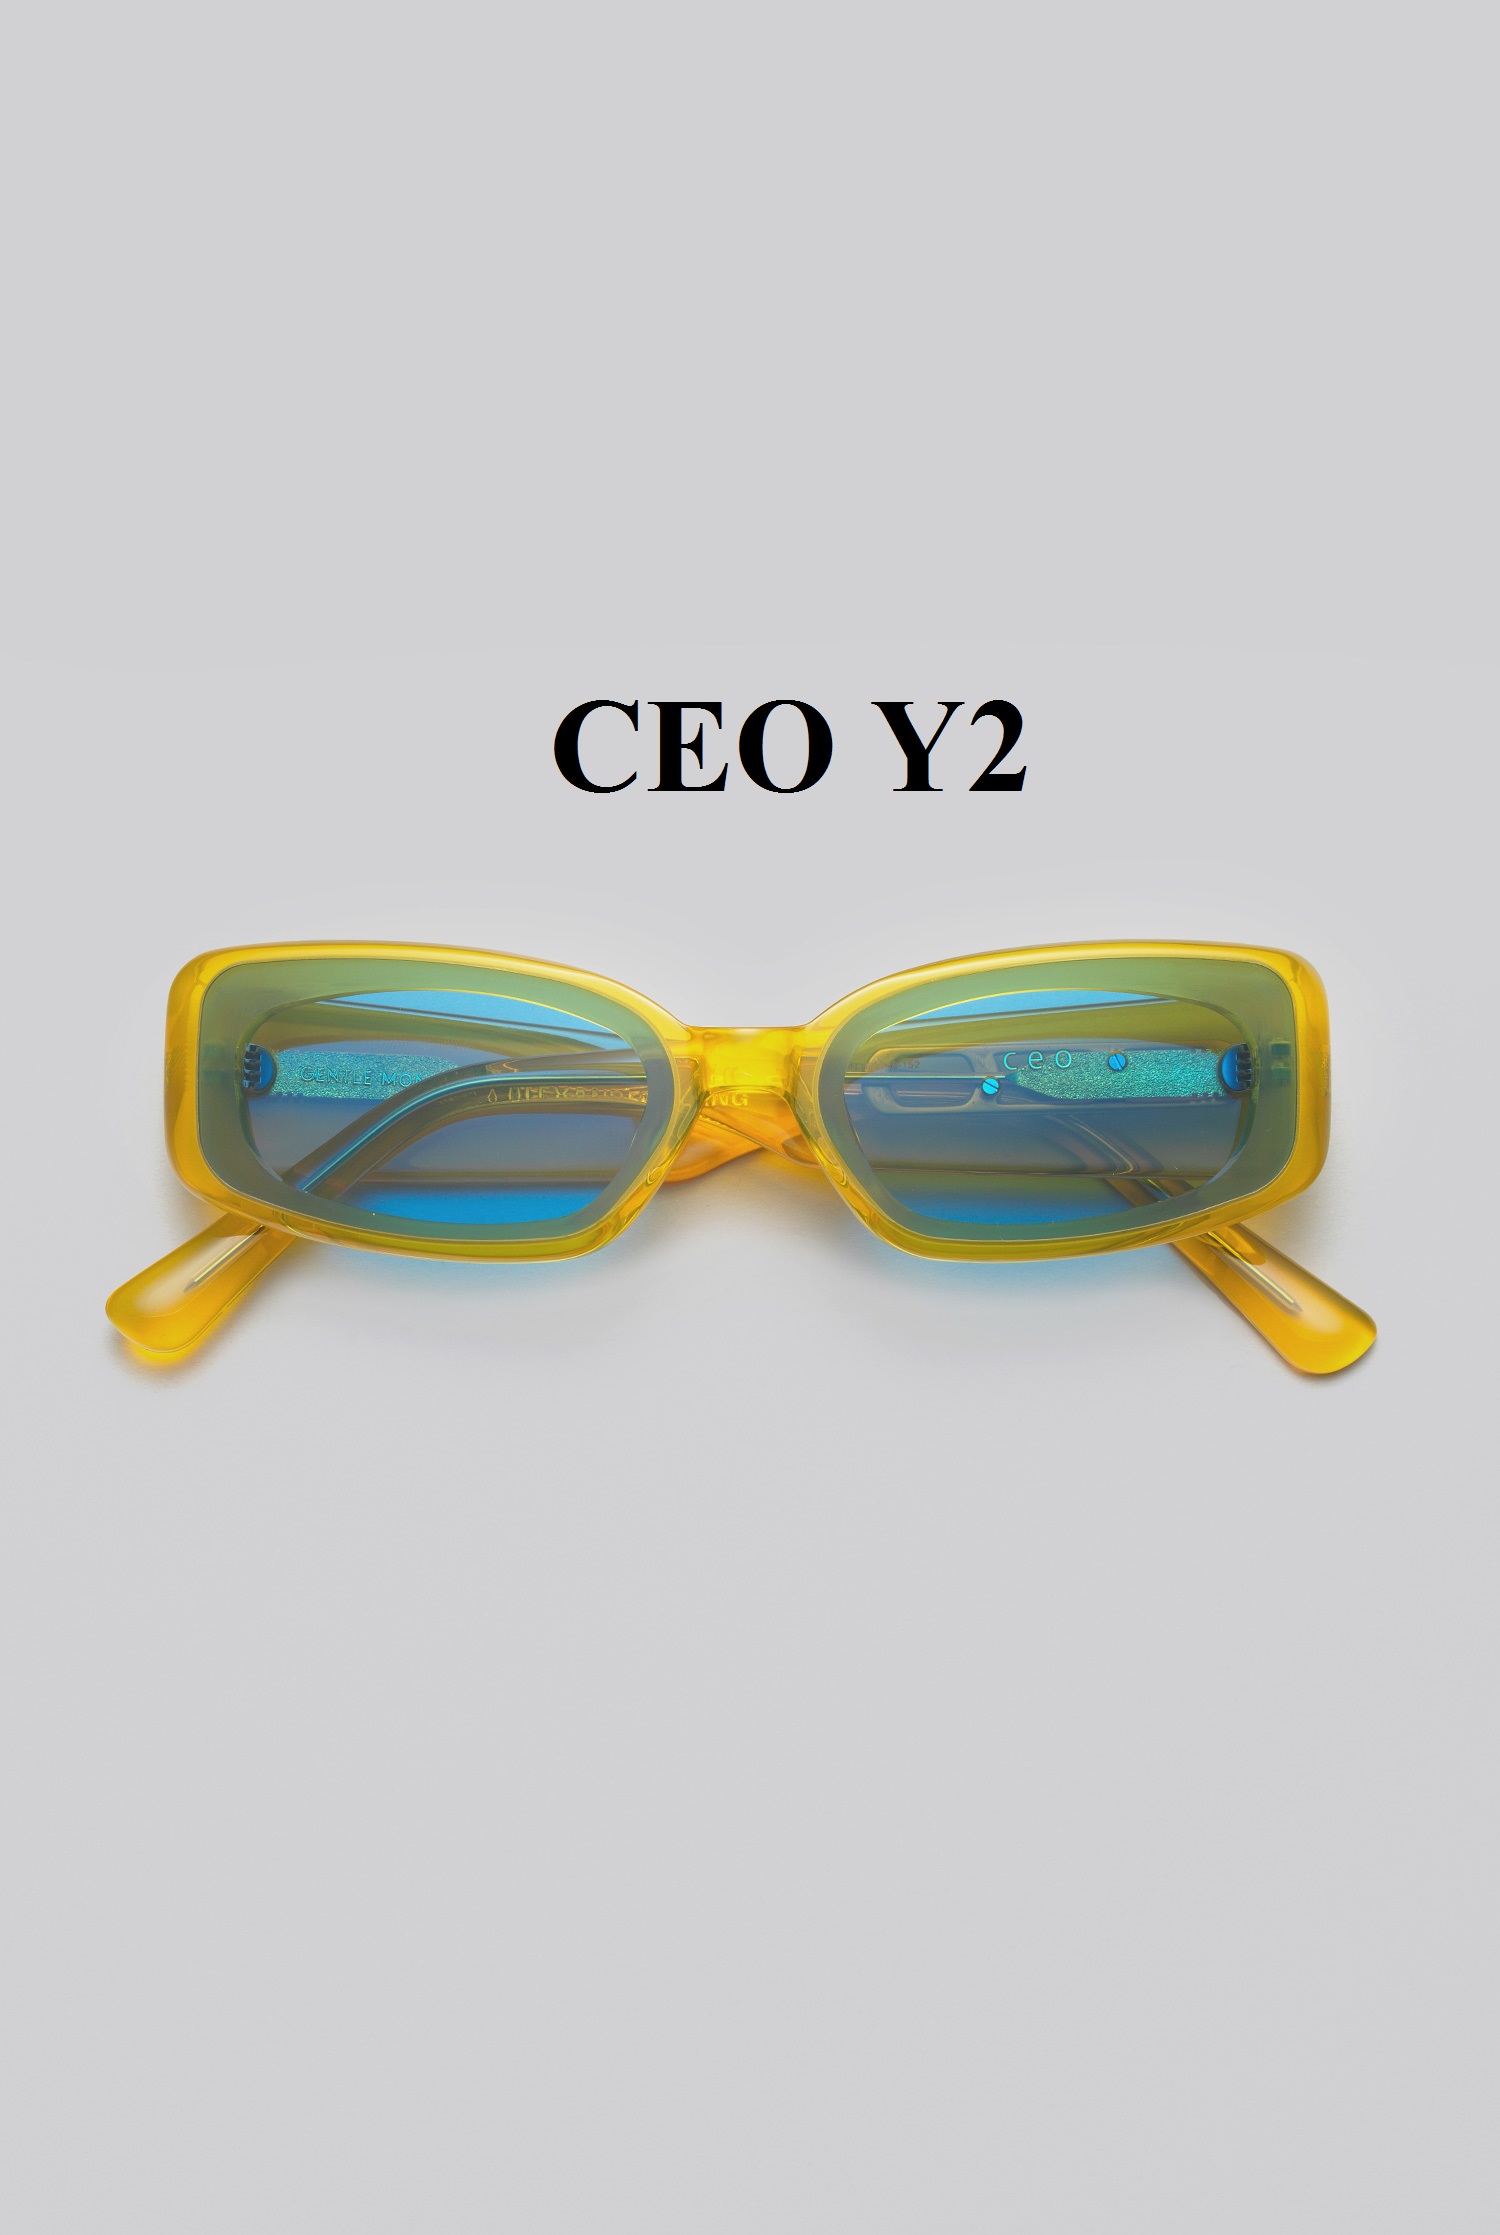 CEO Y2